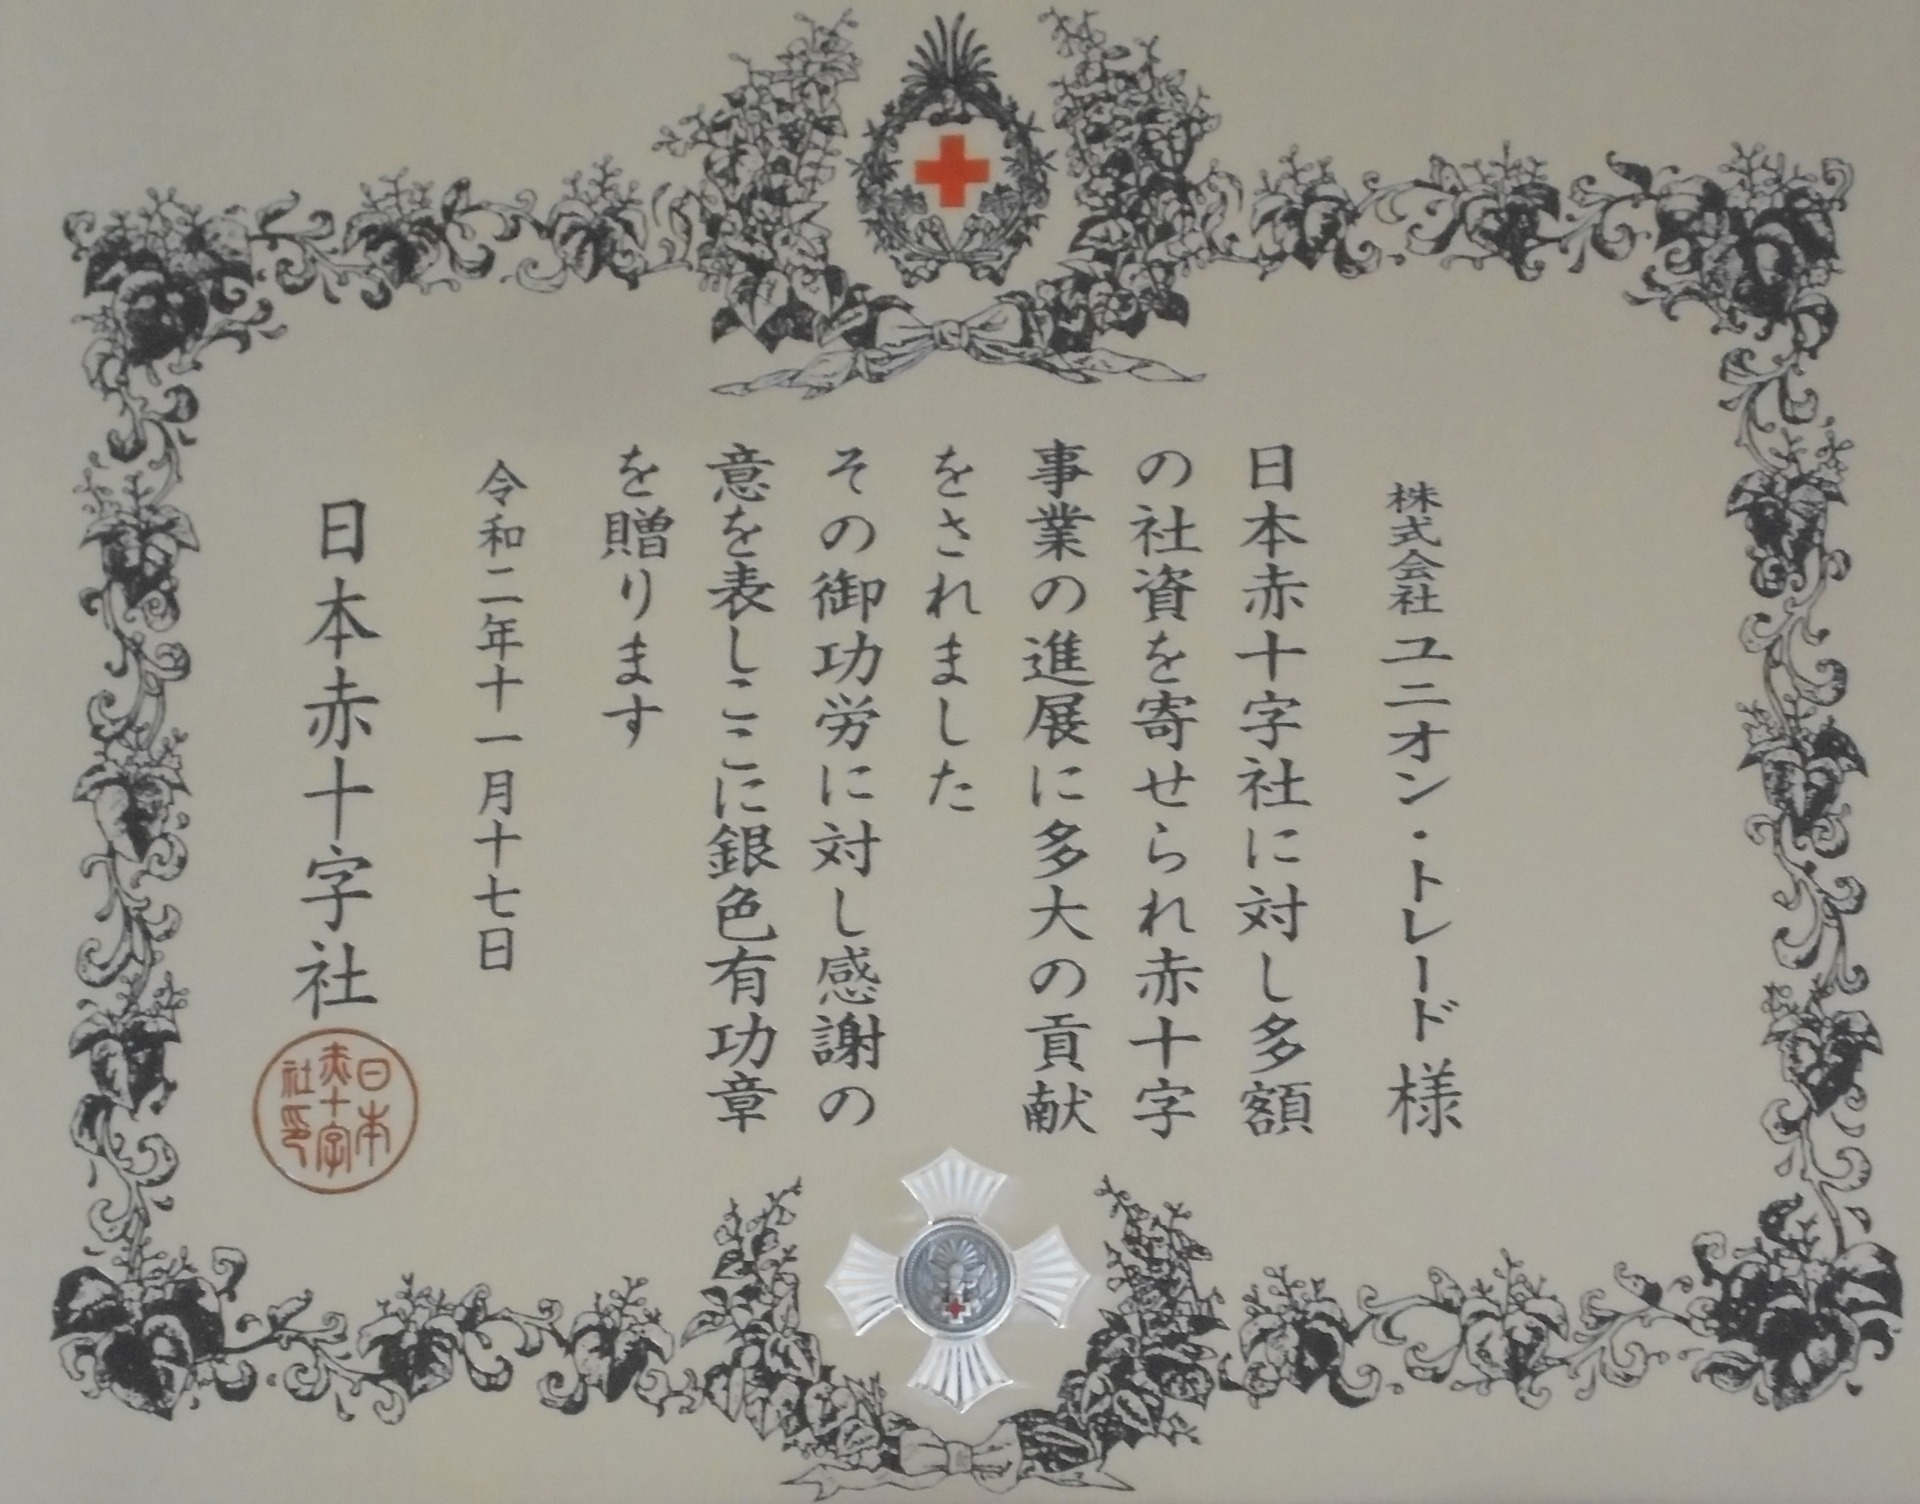 日本赤十字社『銀色有功章』を受章しました。